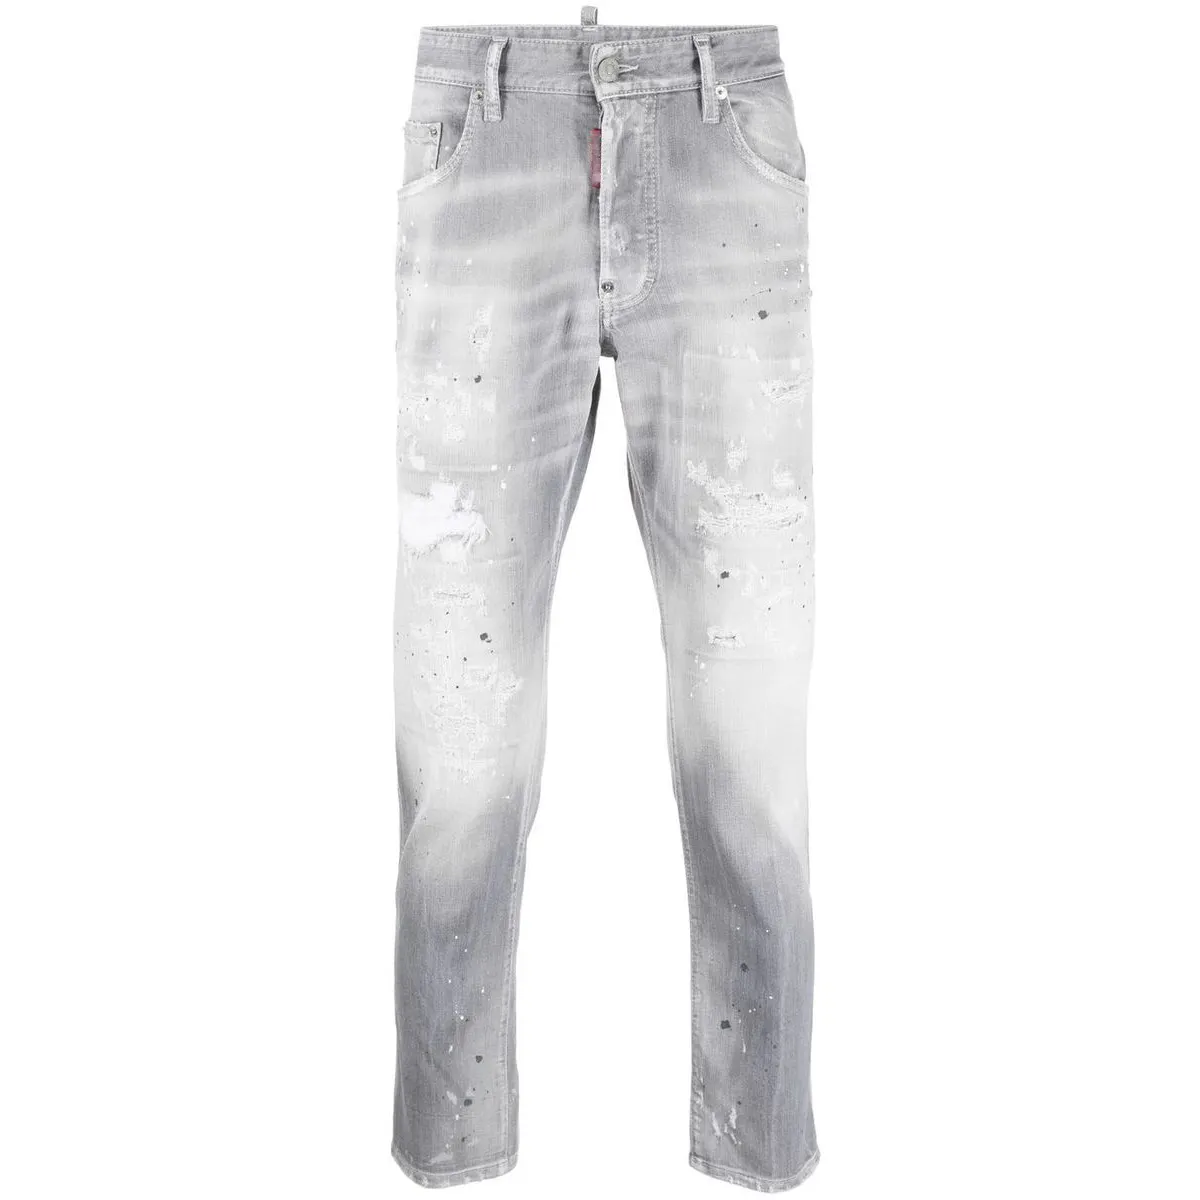 Nuova moda Custom Design Slim Jeans per gli uomini Skinny uomini alti grigiore Jeans Denim pantaloni a basso prezzo e di alta qualità